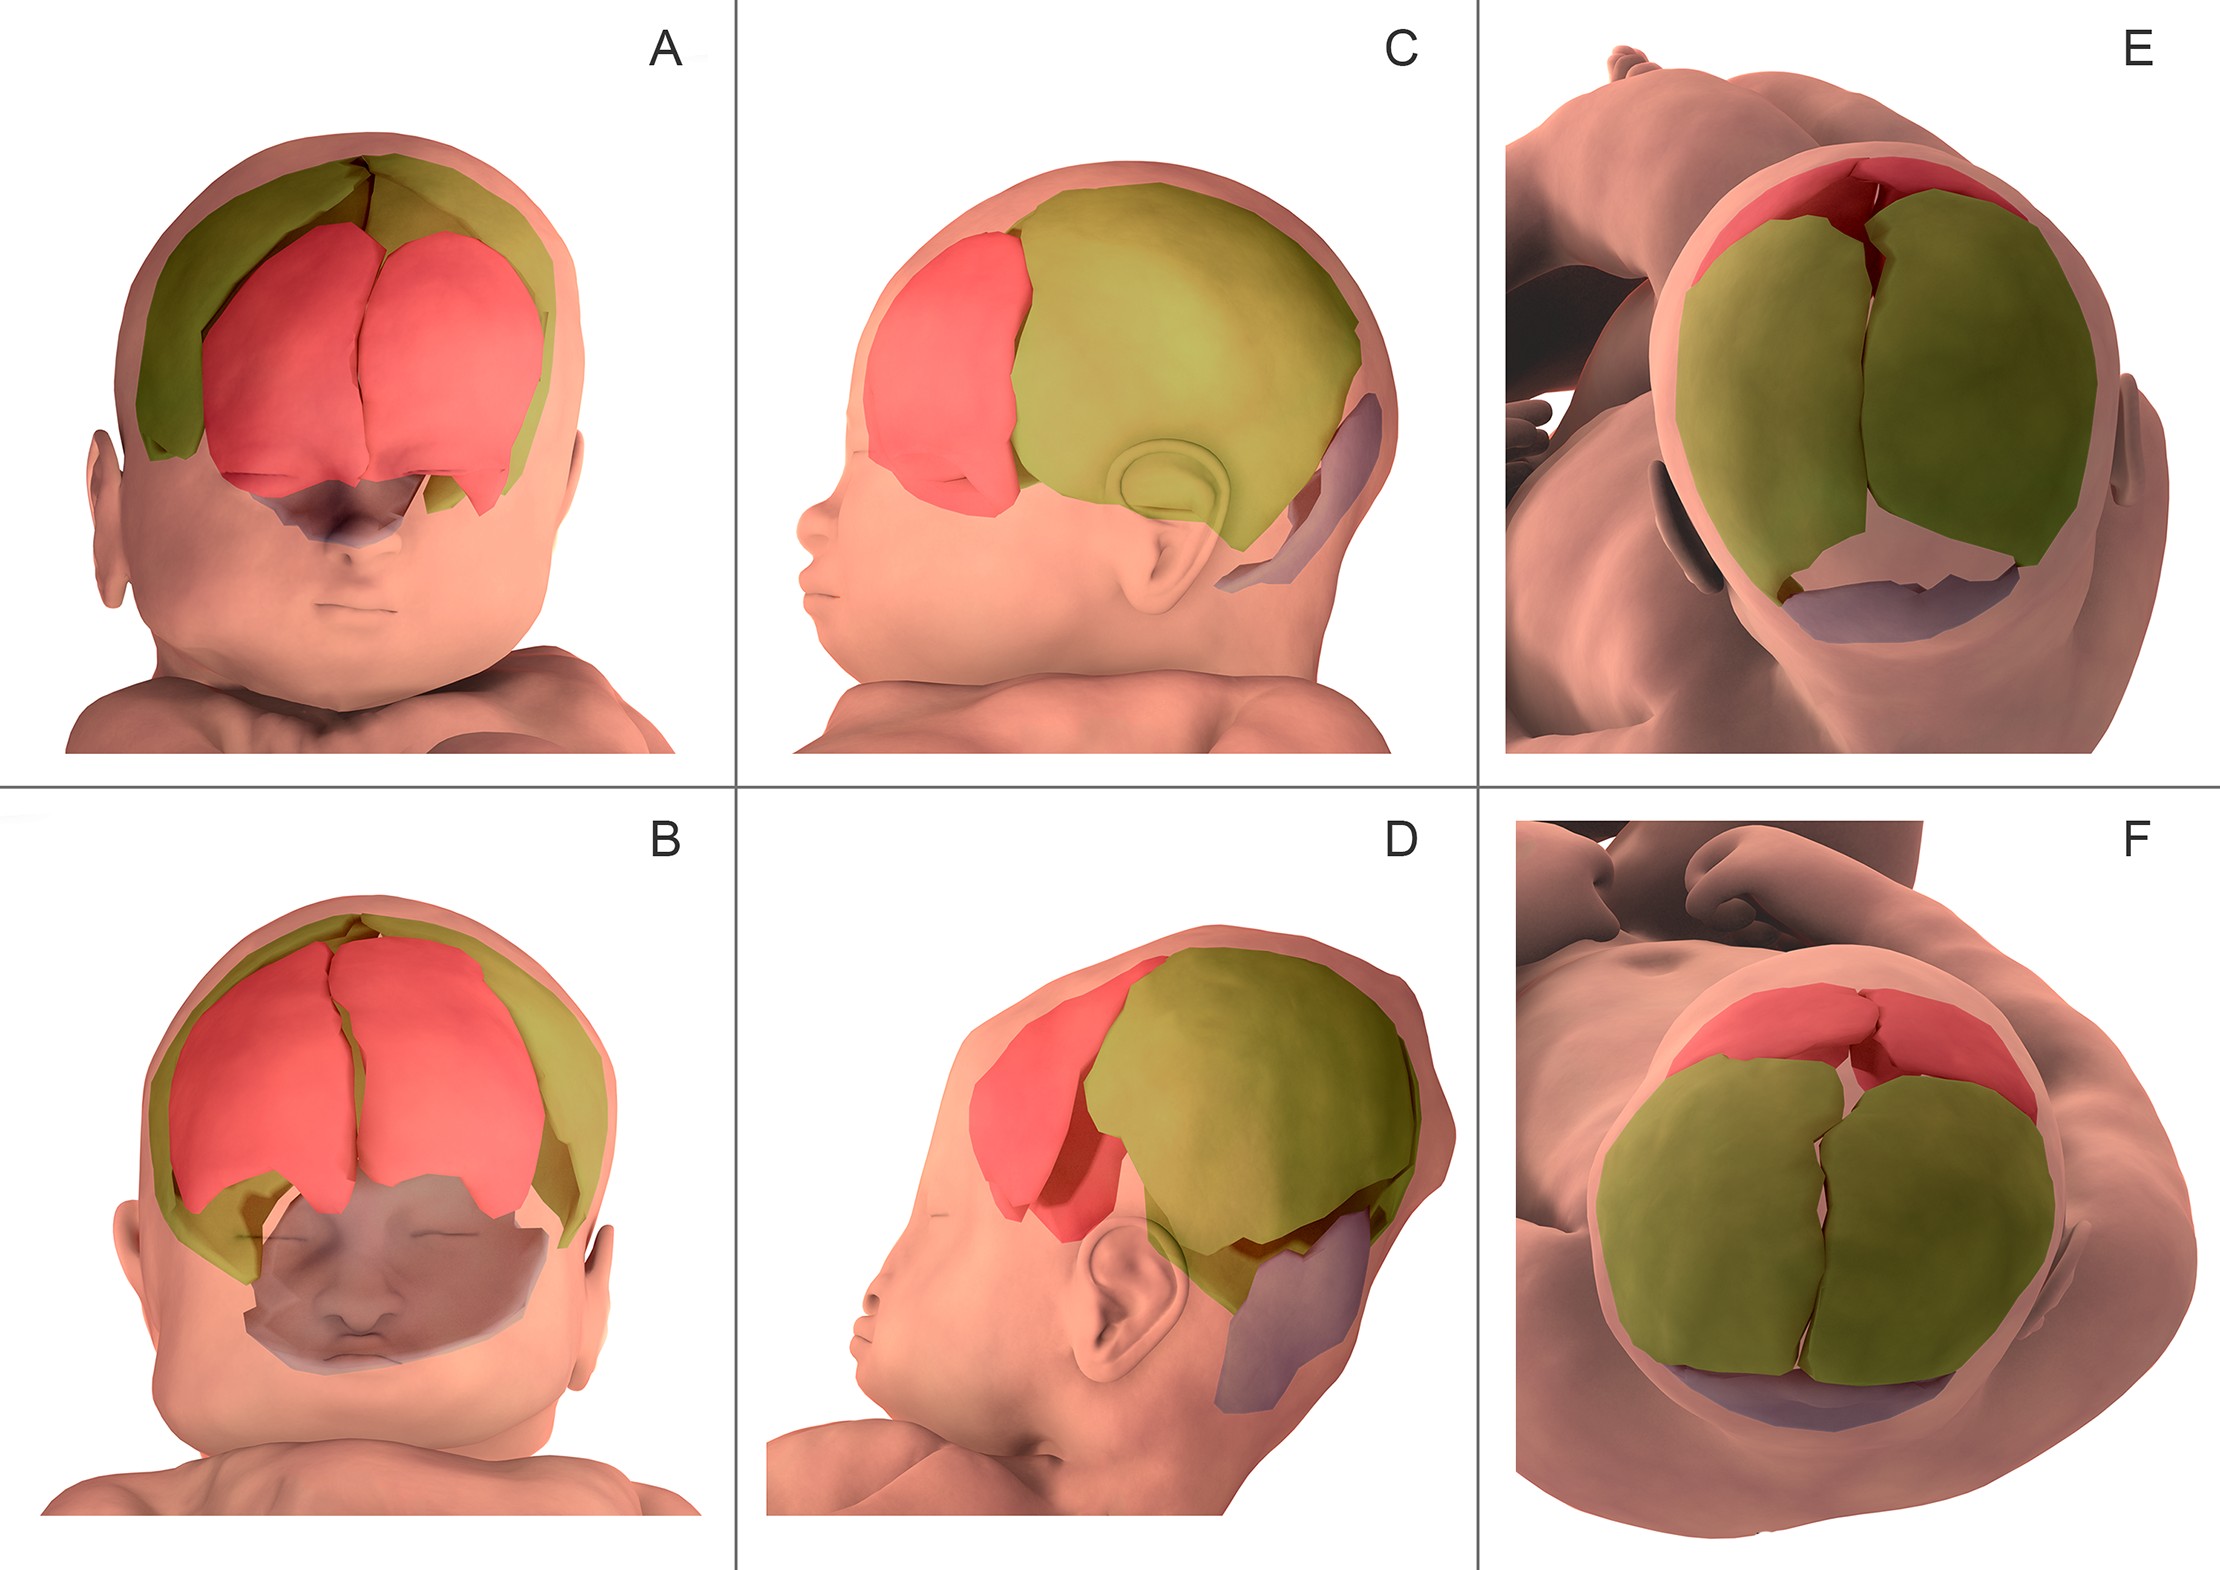 Reconstrução tridimensional de elementos finitos dos ossos cranianos antes do trabalho de parto (A, C, E) e durante o segundo estágio do trabalho de parto (B, D, F) no paciente 5. Os ossos frontais estão marcados em rosa, ossos parietais em verde e o osso occipital em azul. Na visão anterior (A, B), observou-se que a fontanela bregmática (popularmente conhecida como moleira) diminuiu de tamanho durante o parto. Na visão lateral (C, D), os ossos do crânio foram alterados em orientação relativa e quantidade de sobreposição. Na visão superior (E, F), as fontanelas bregmáticas e lambdoides diminuíram de tamanho durante o parto. (Foto: Ami et al., 2019)